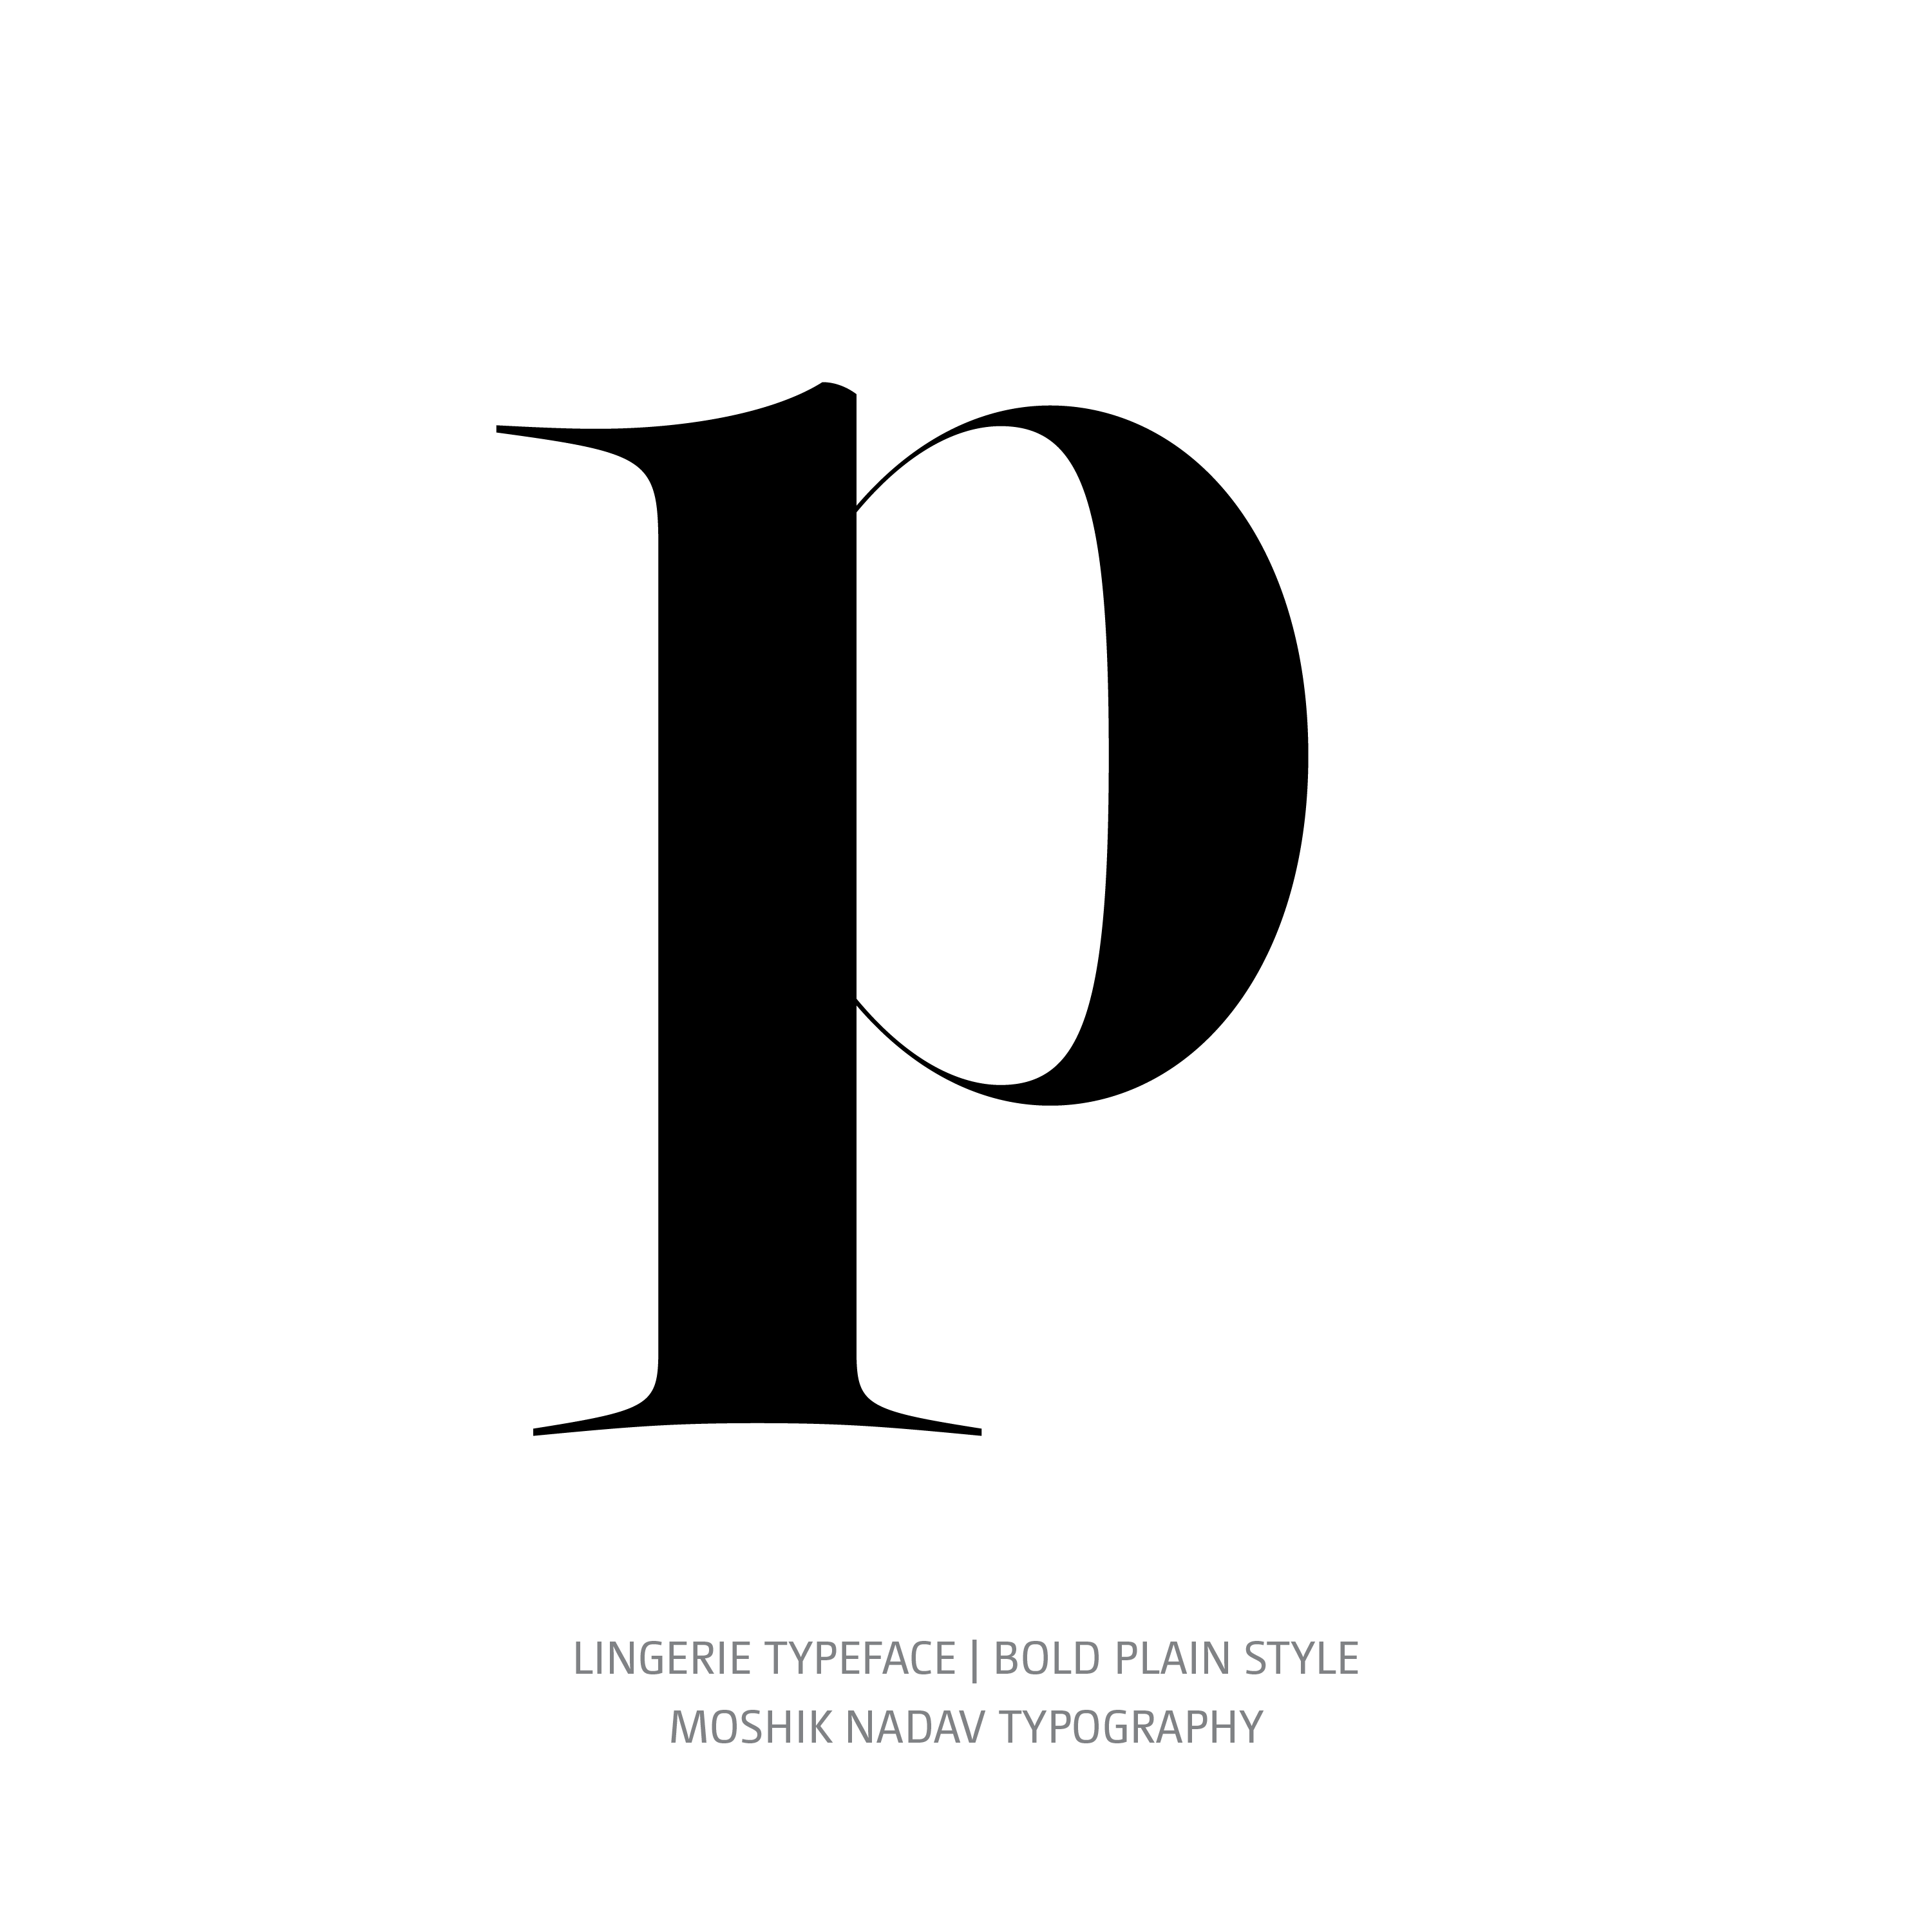 Lingerie Typeface Bold Plain p